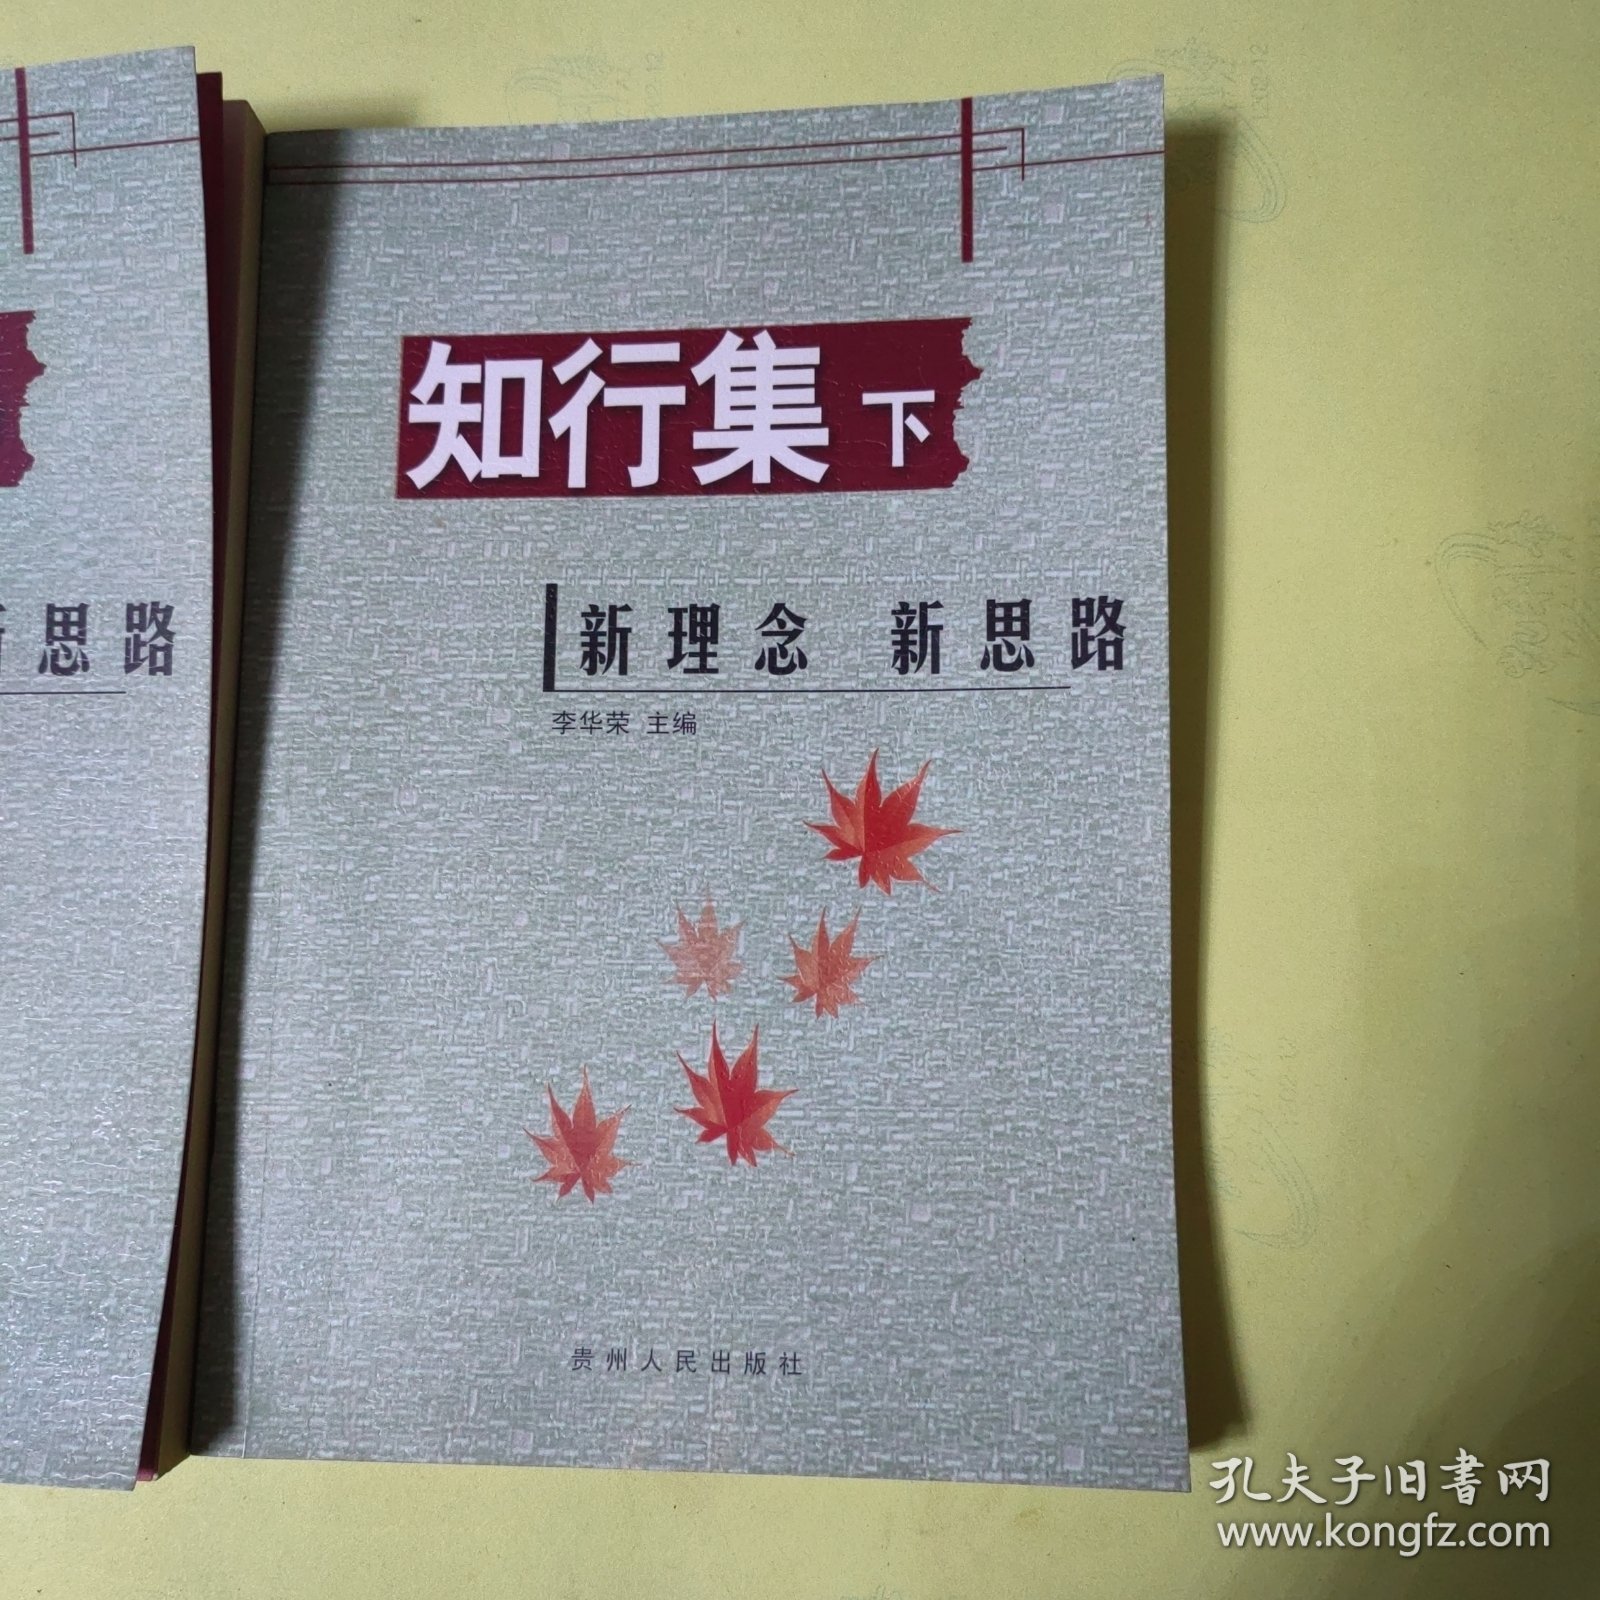 贵阳市实验二中教师论文集：知行集（中下册）2册合售